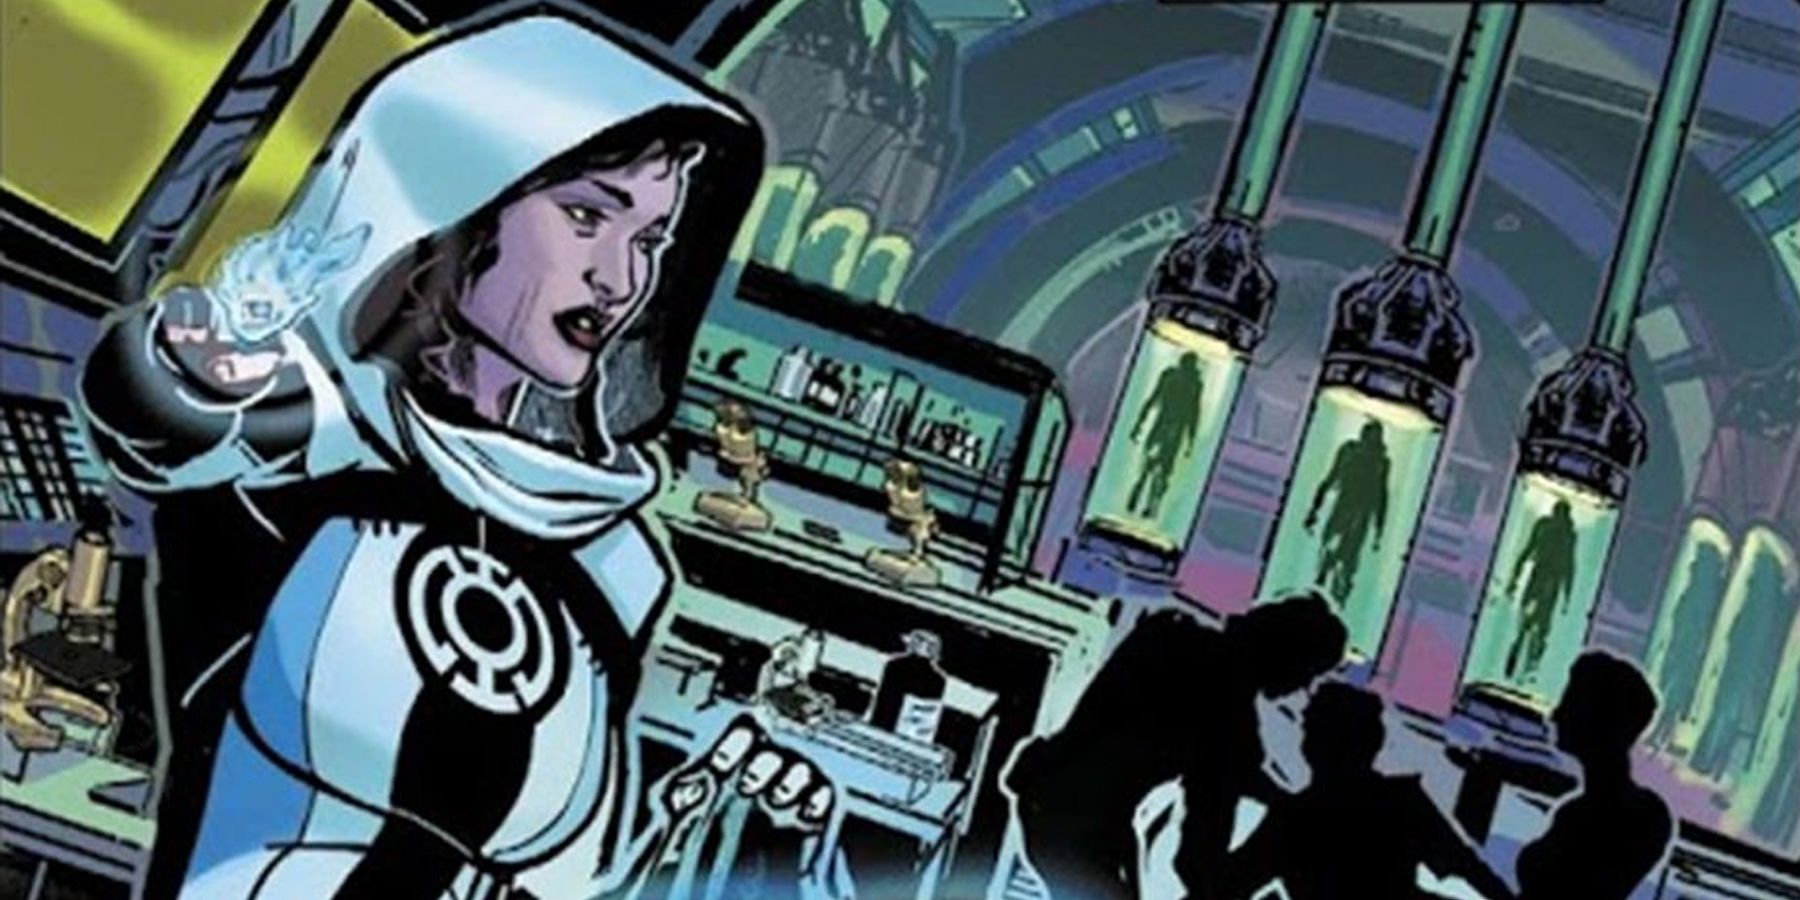 Lois Lane as a Blue Lantern